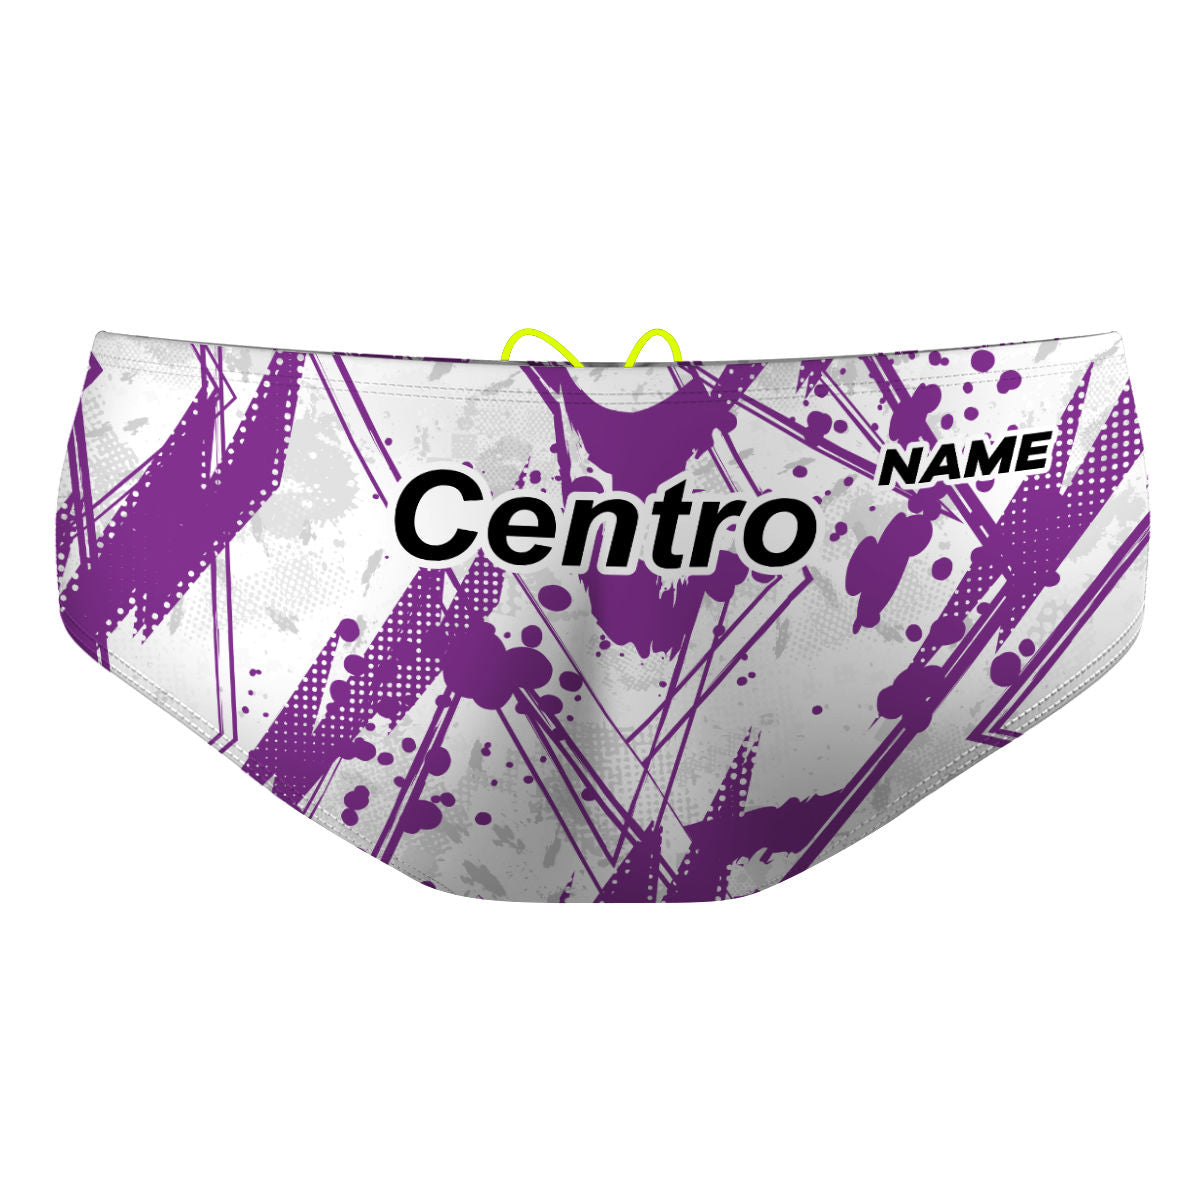 NV Centro - Classic Brief Swimsuit